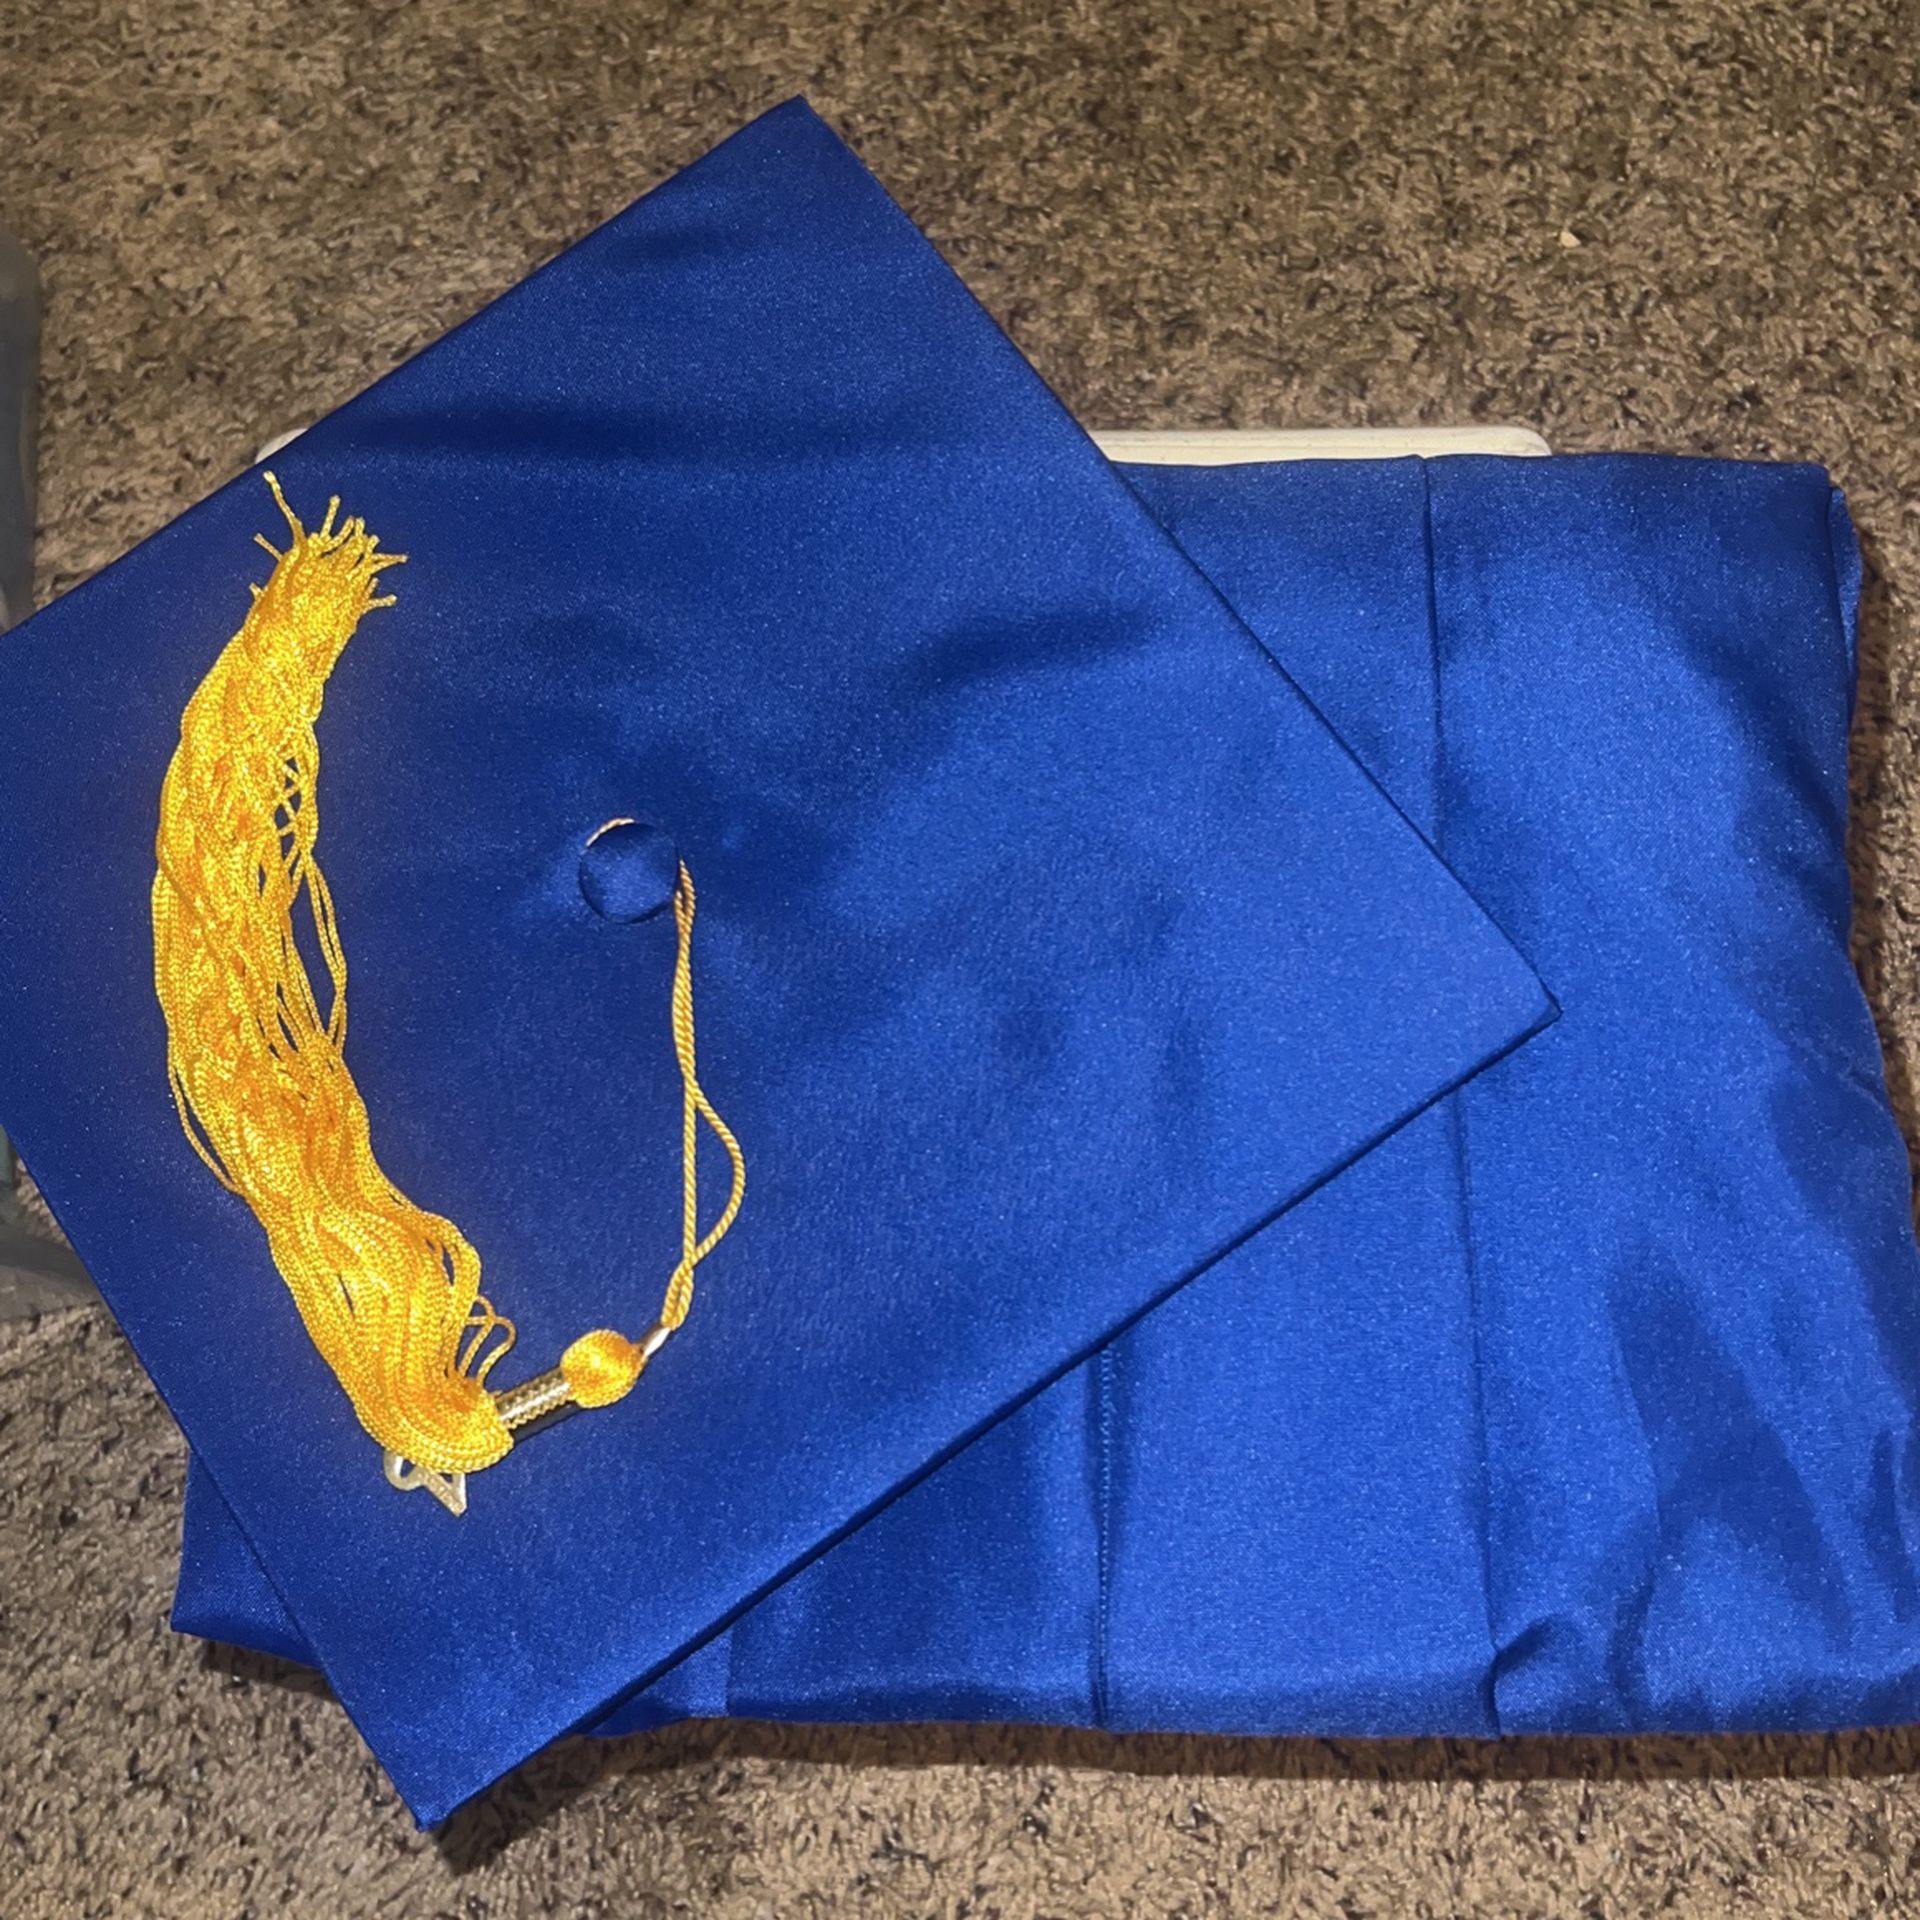 Graduation Gown + Cap (5’1” - 5’3”)